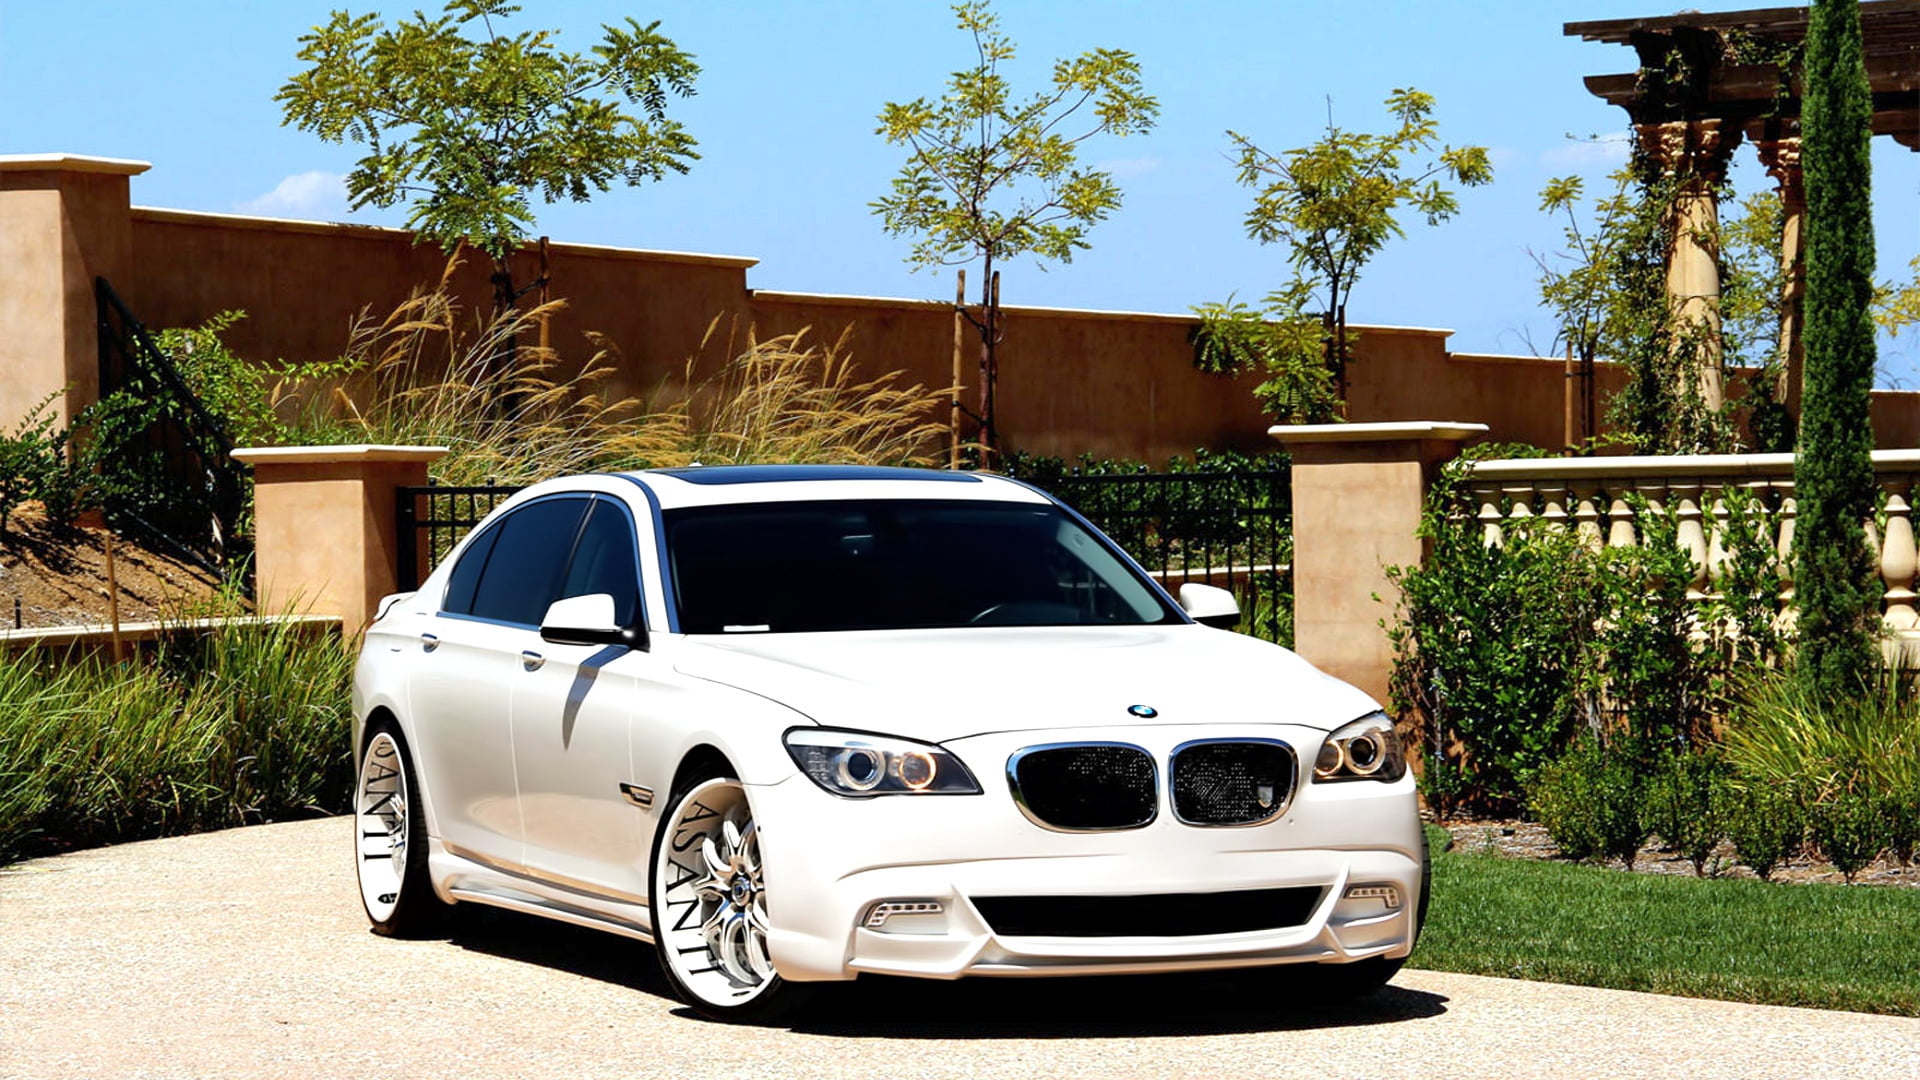 white BMW 5 series sedan, 7series, tuning, asanti, car, land Vehicle